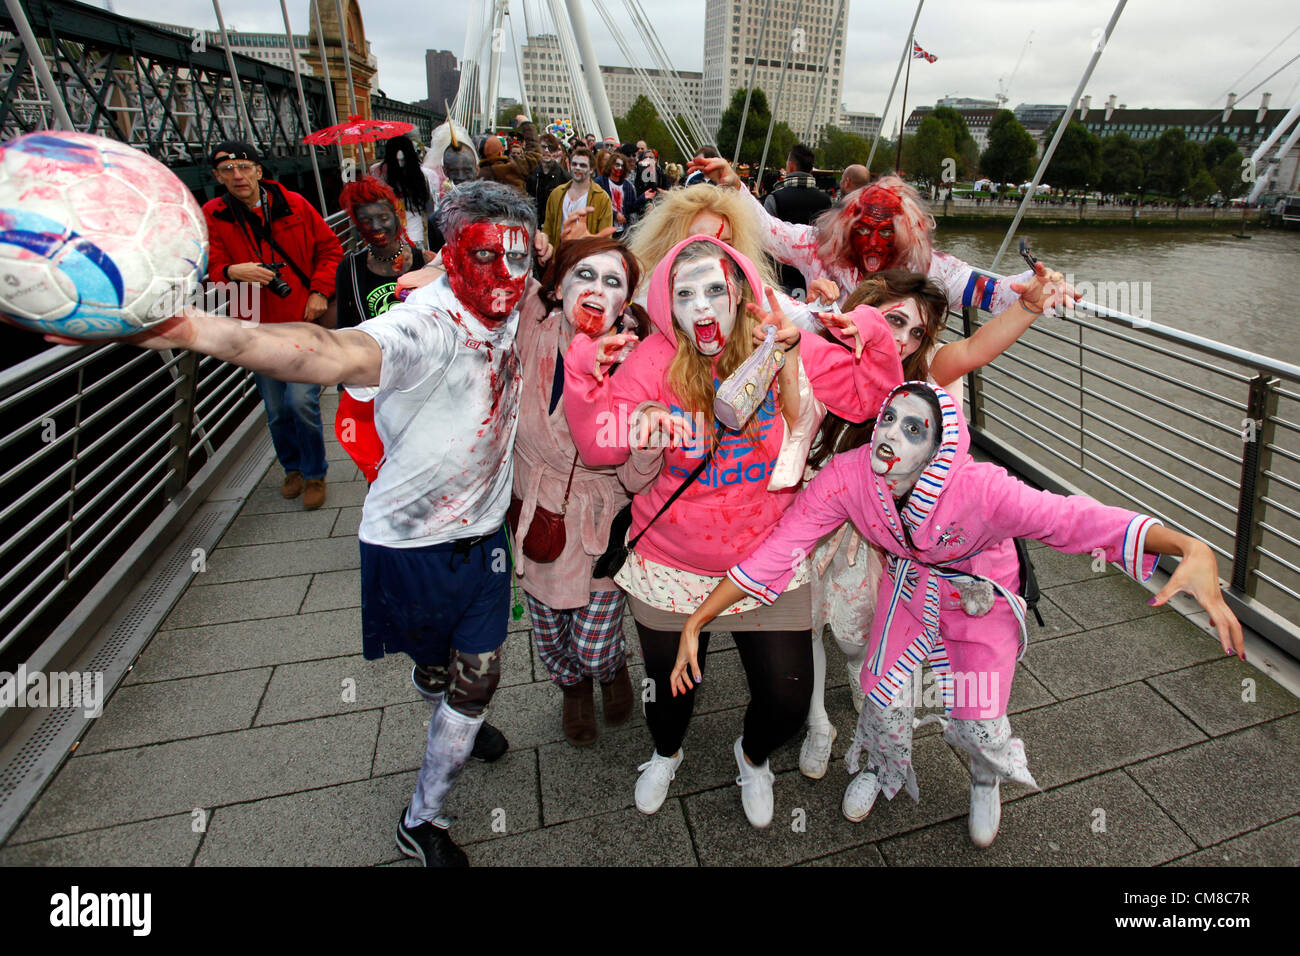 London, UK. 27. Oktober 2012. Menschen verkleidet als Zombies Halloween verkleidet auf eine Kneipentour in London Halloween Zombie Walk 2012 feiern. Stockfoto